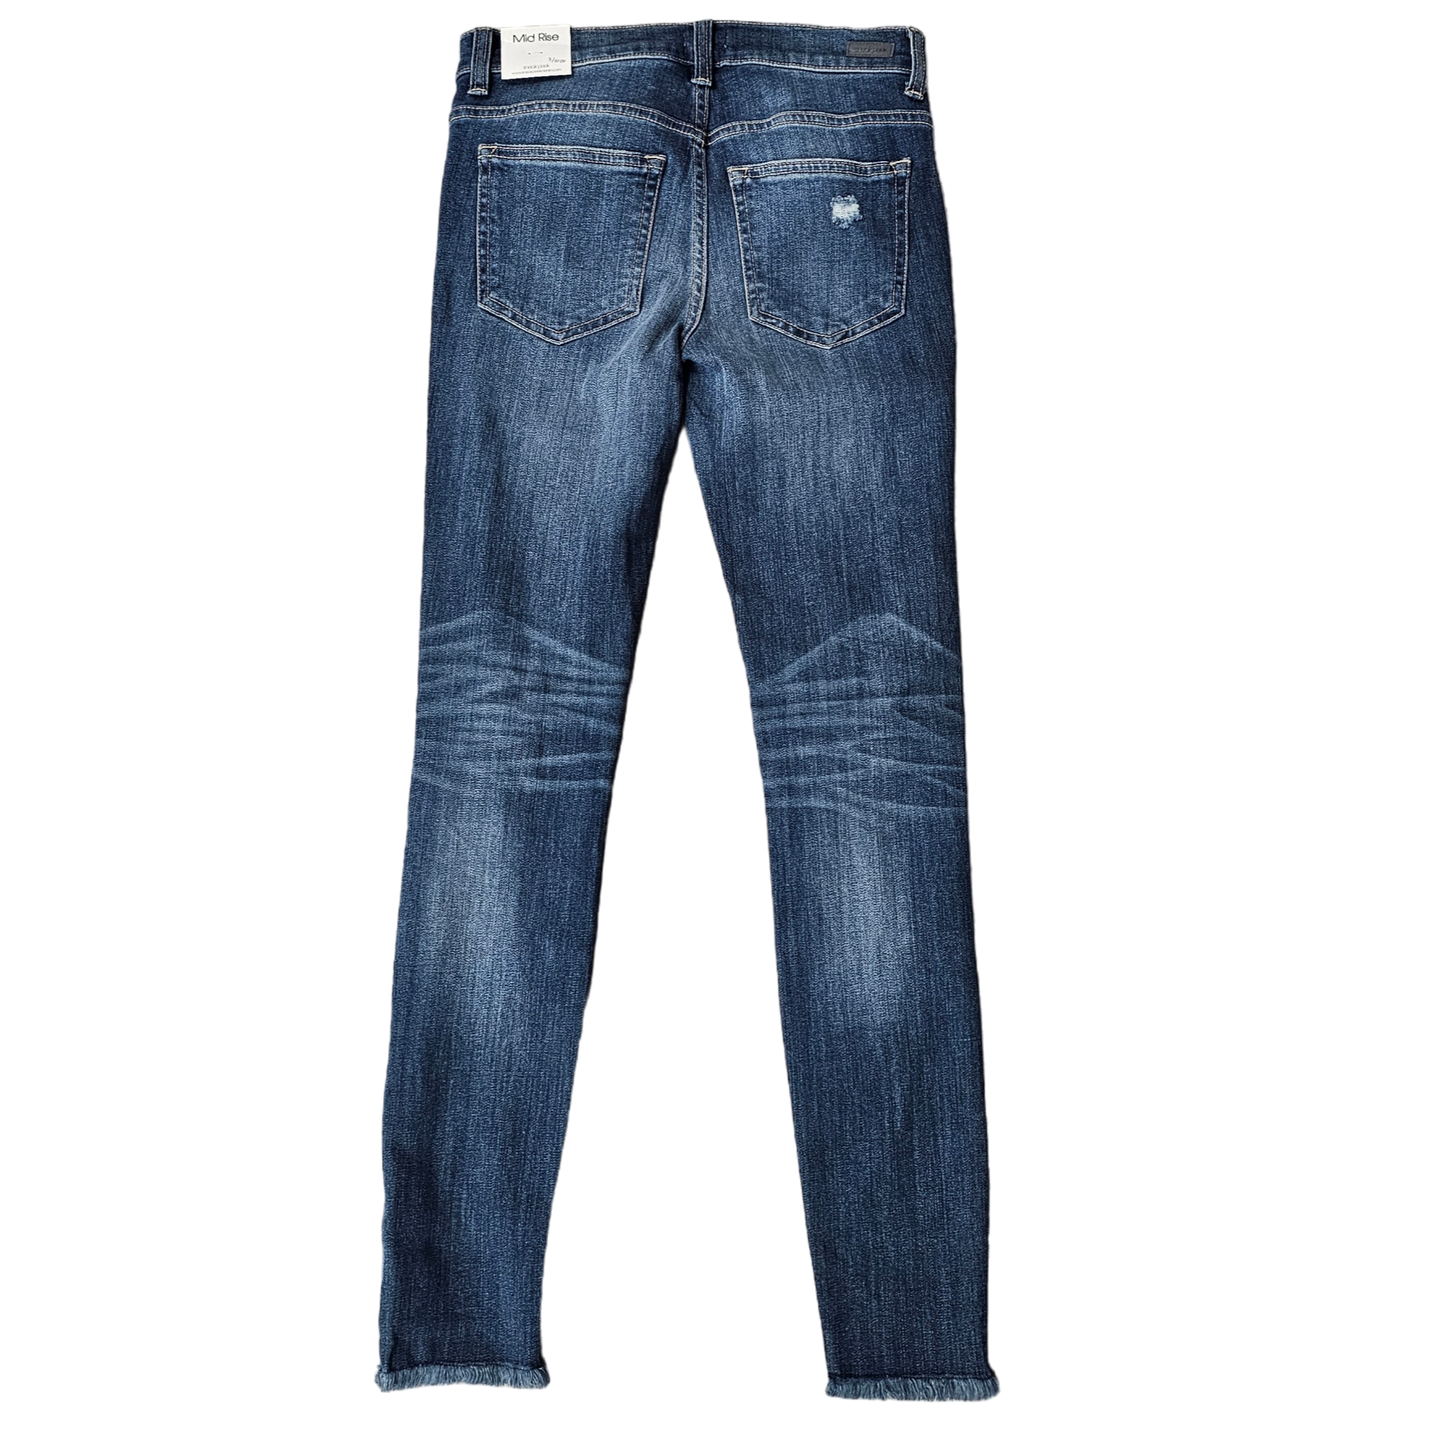 Jeans Skinny By Sneak Peek  Size: 26